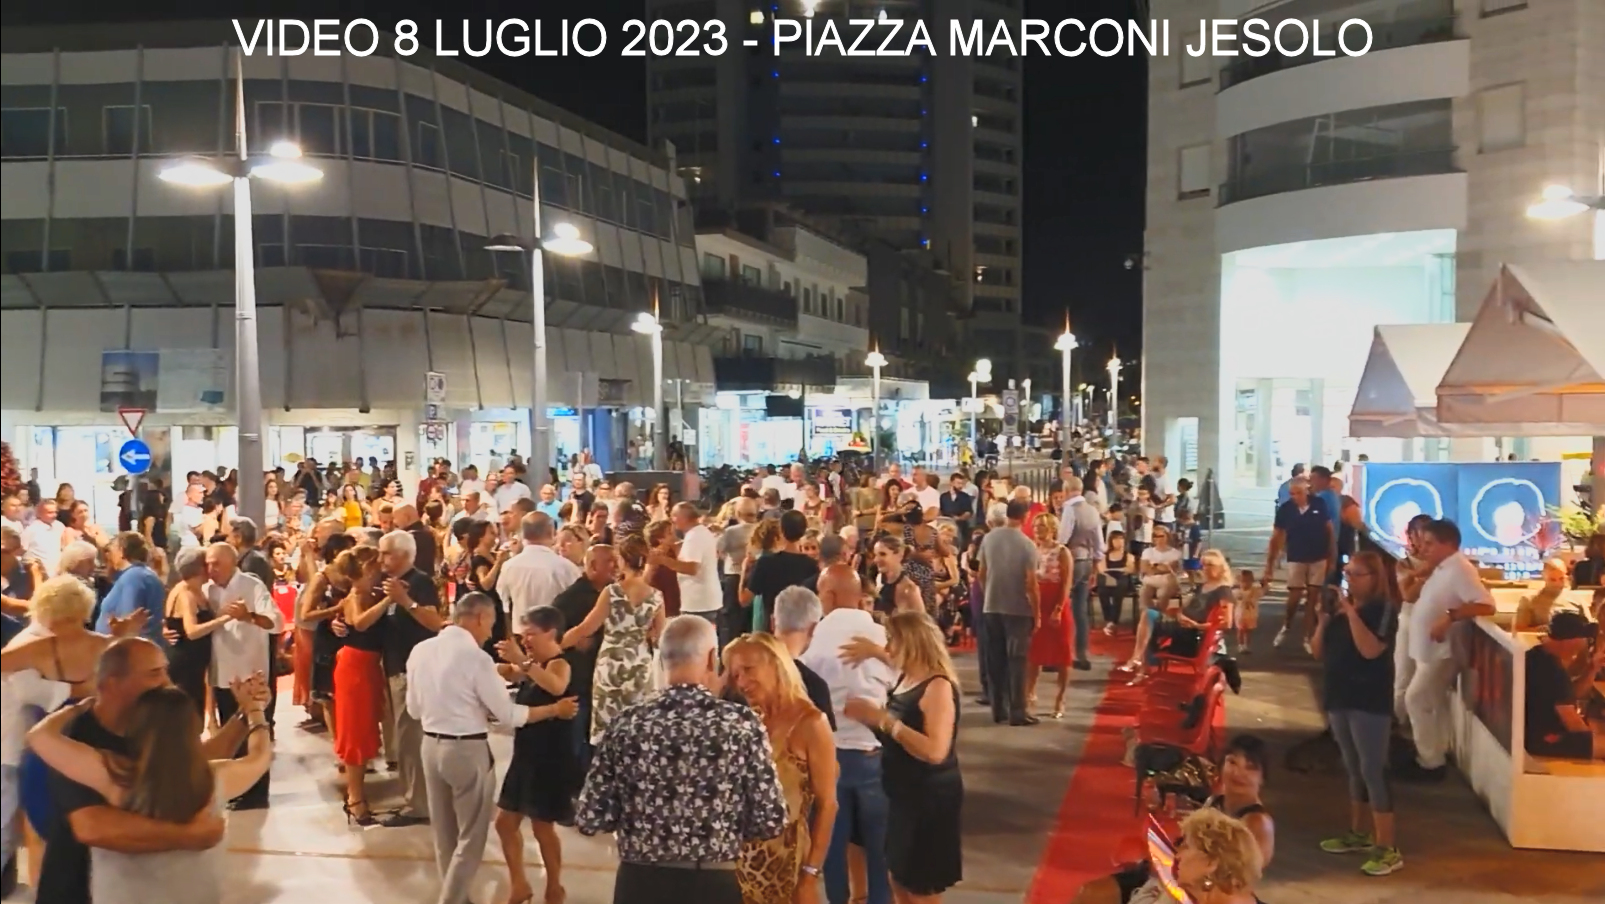 Video 8 Luglio 2023 Piazza Marconi Jesolo